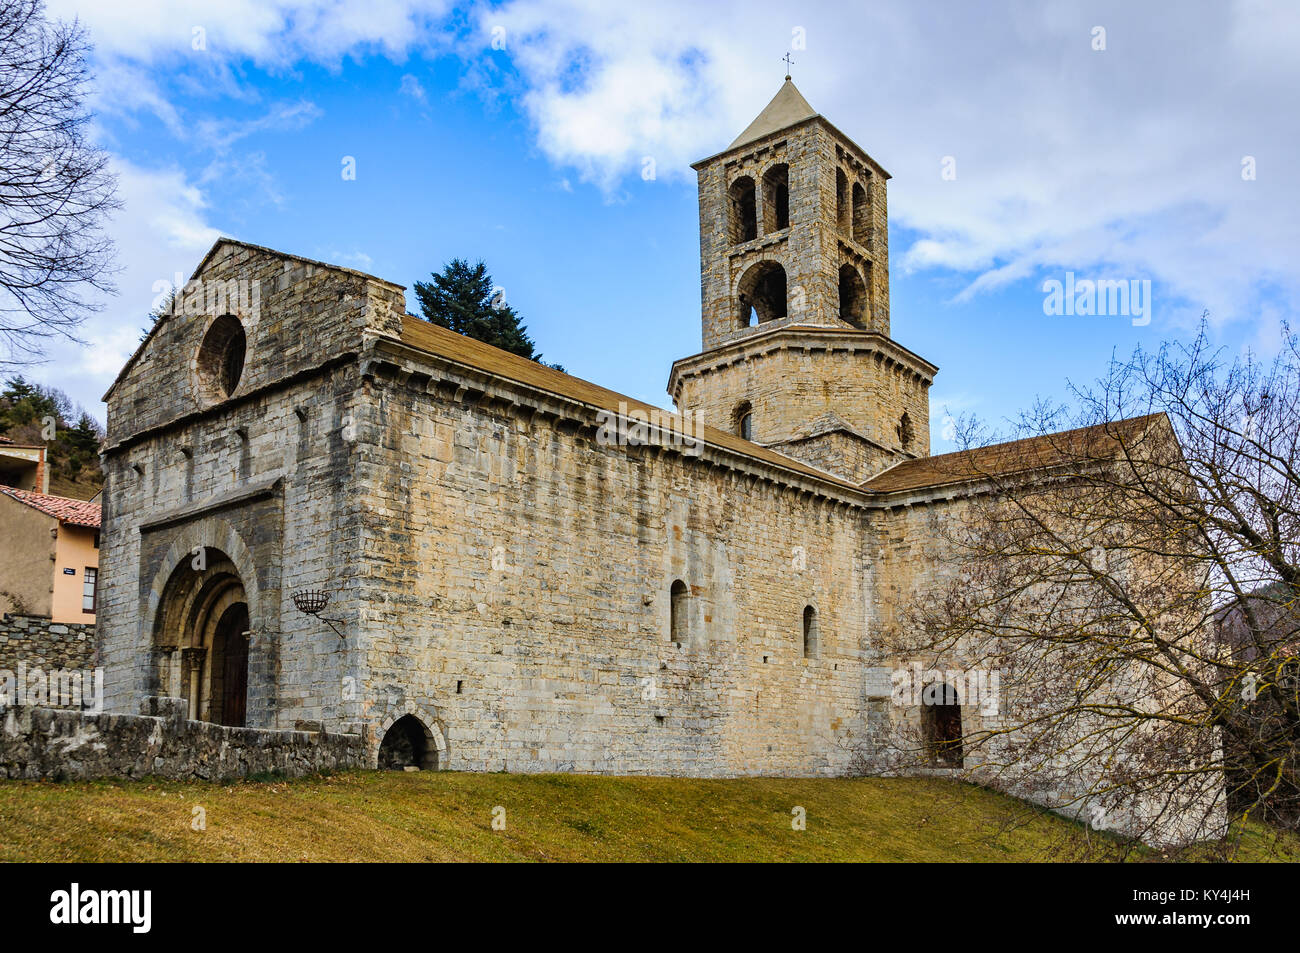 Église romane dans le village Catalan médiéval de Camprodon, Espagne Banque D'Images